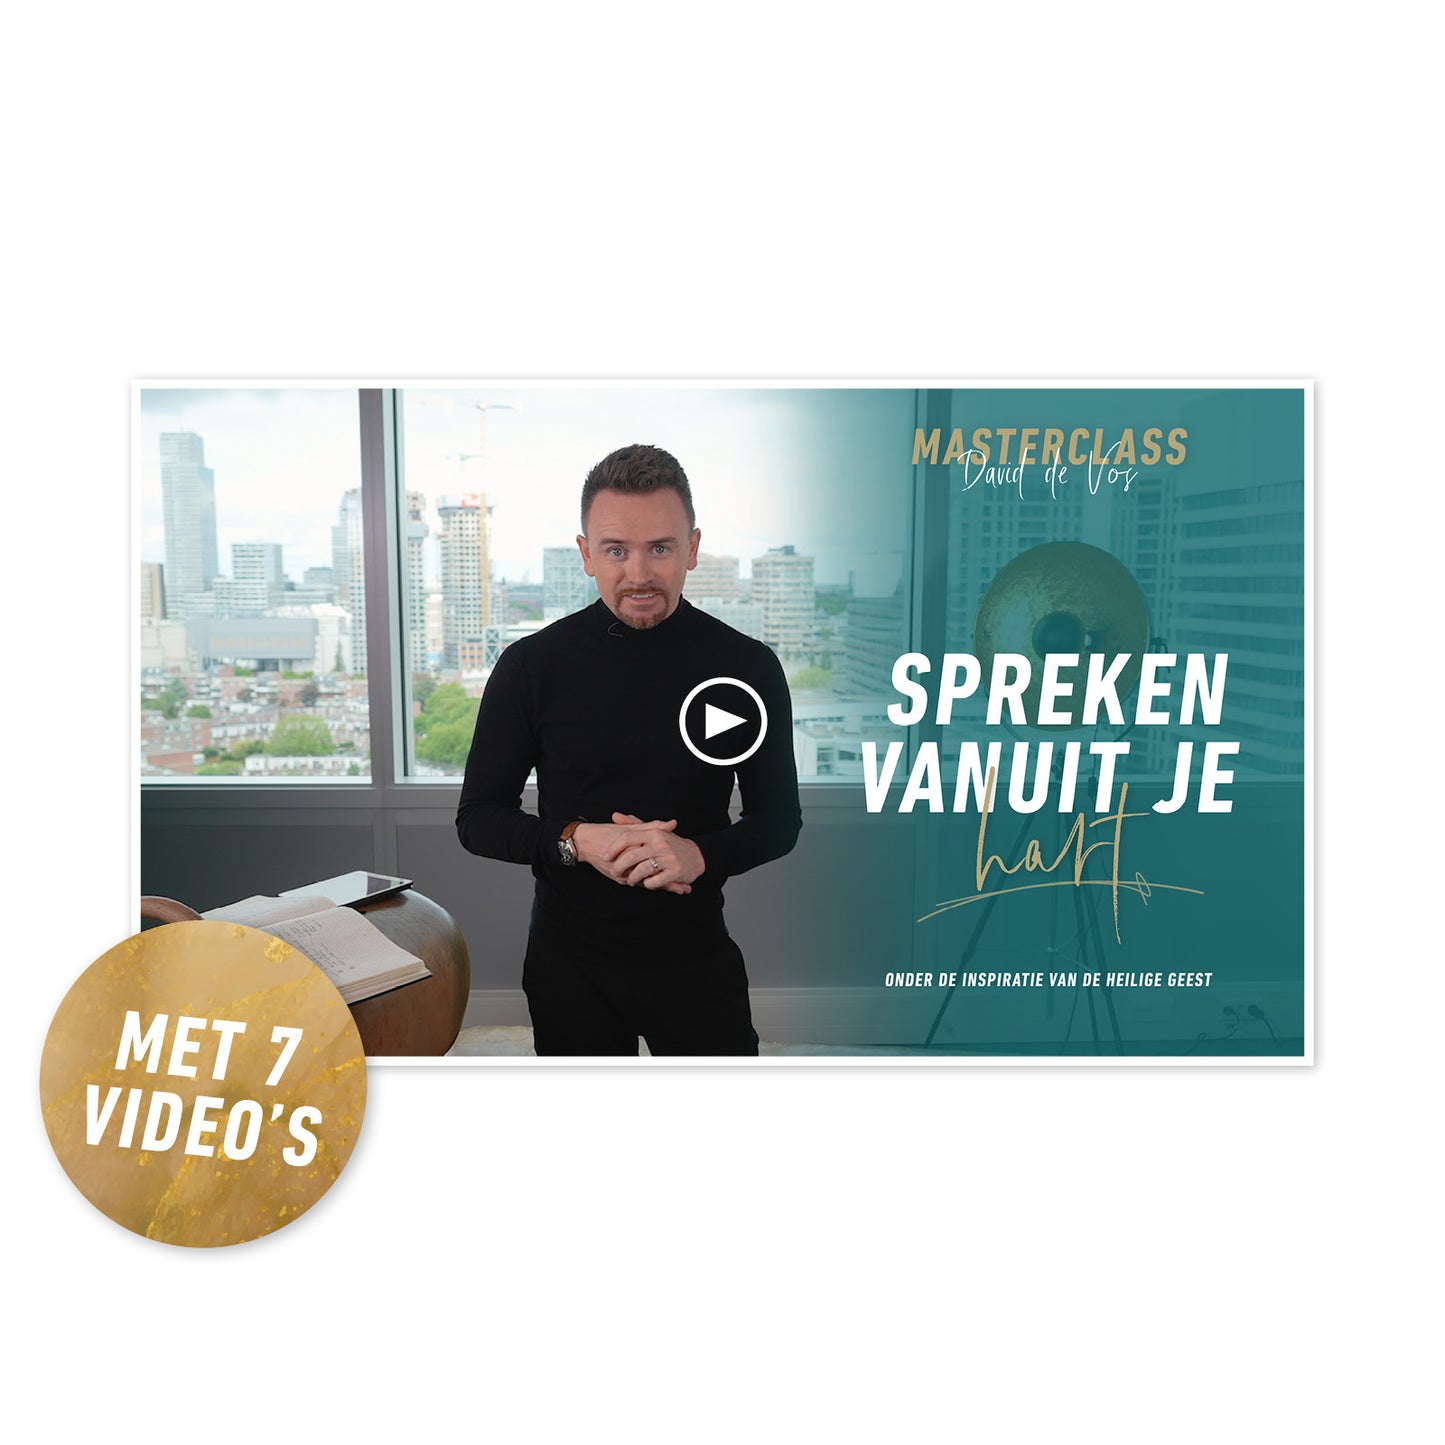 Online Masterclass 'Spreken vanuit je hart'